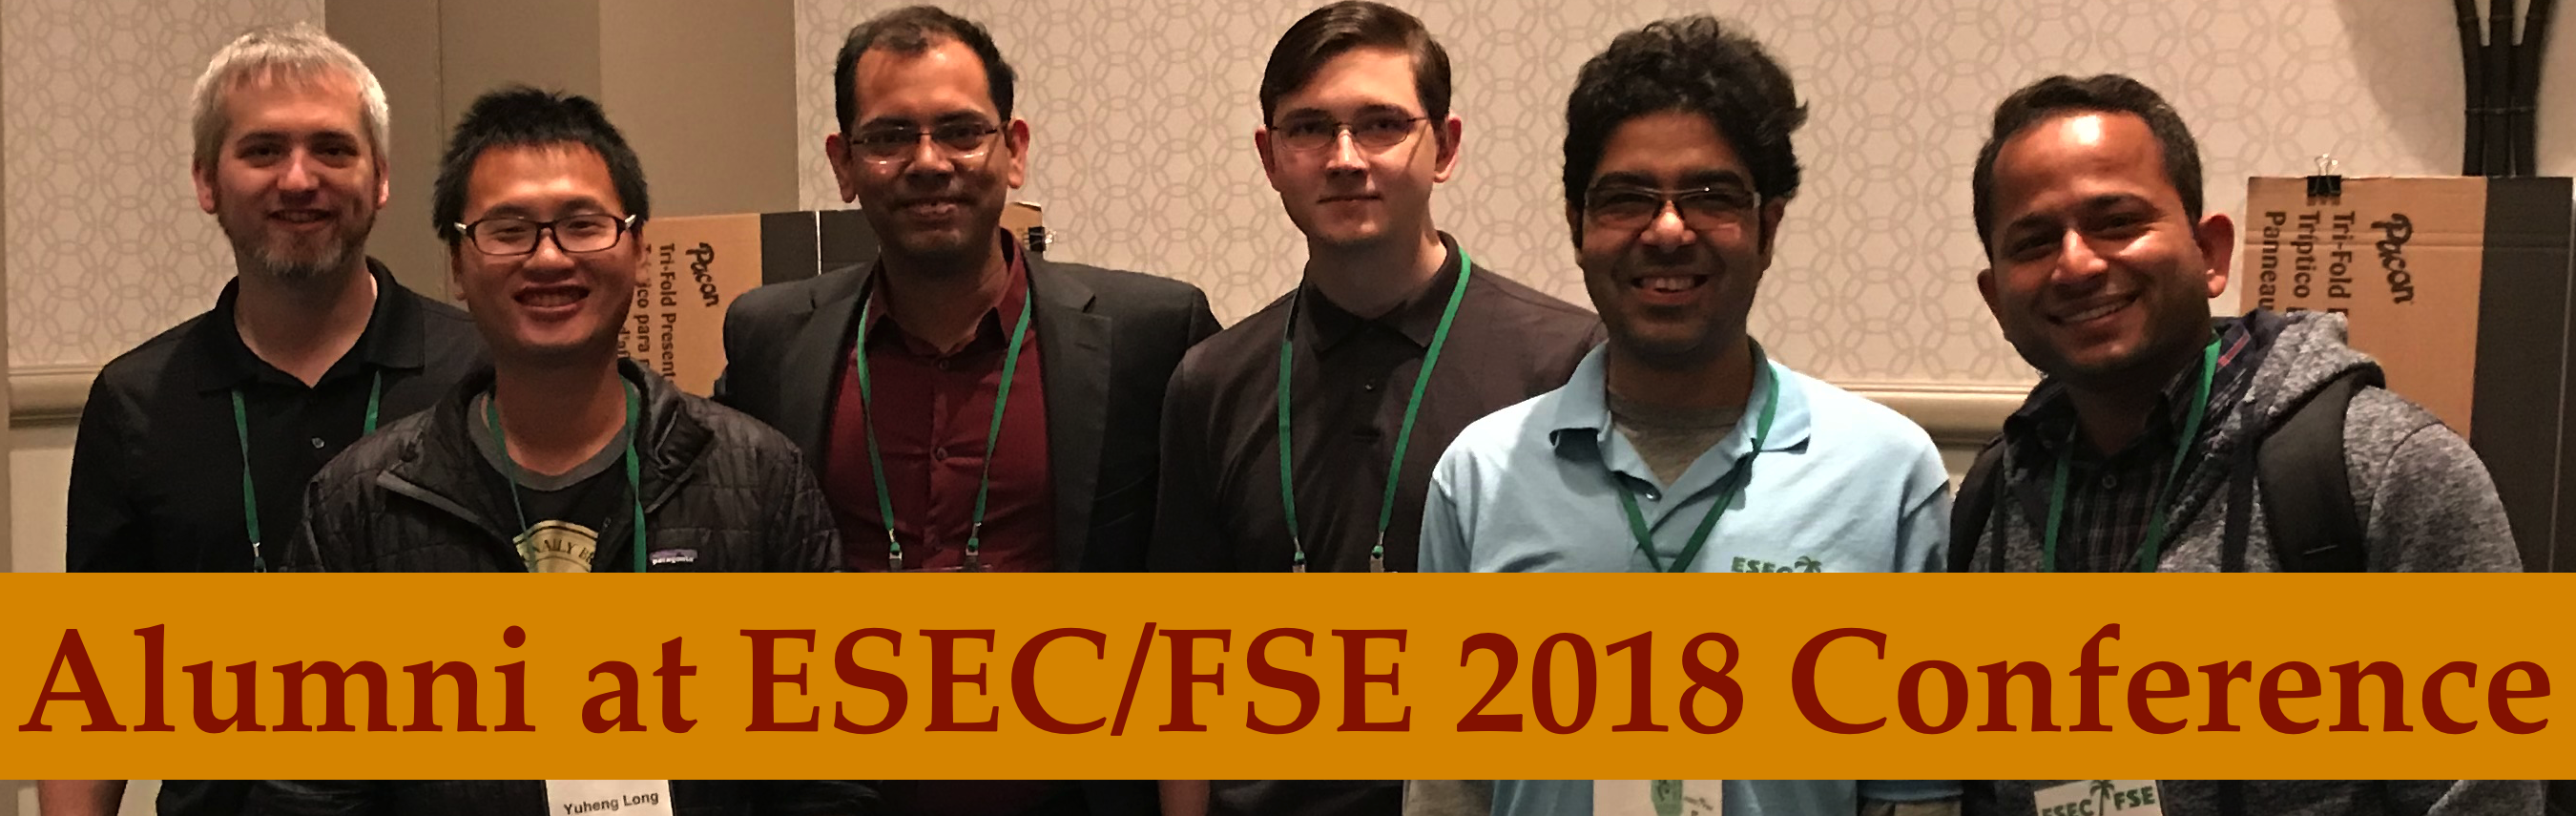 Alumni meet at ESEC/FSE 2018